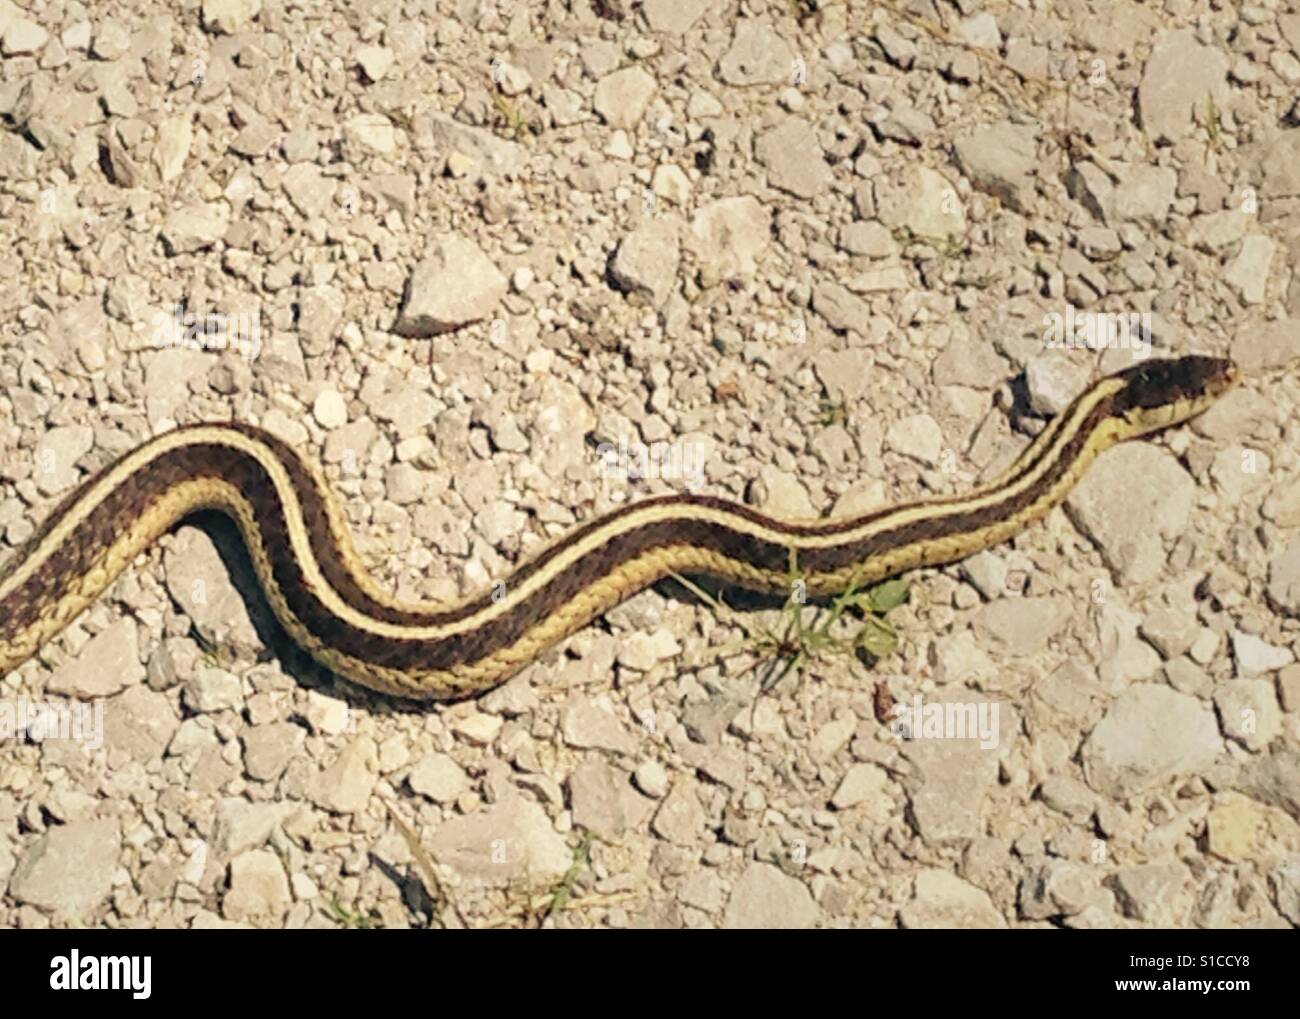 Garter snake. Stock Photo